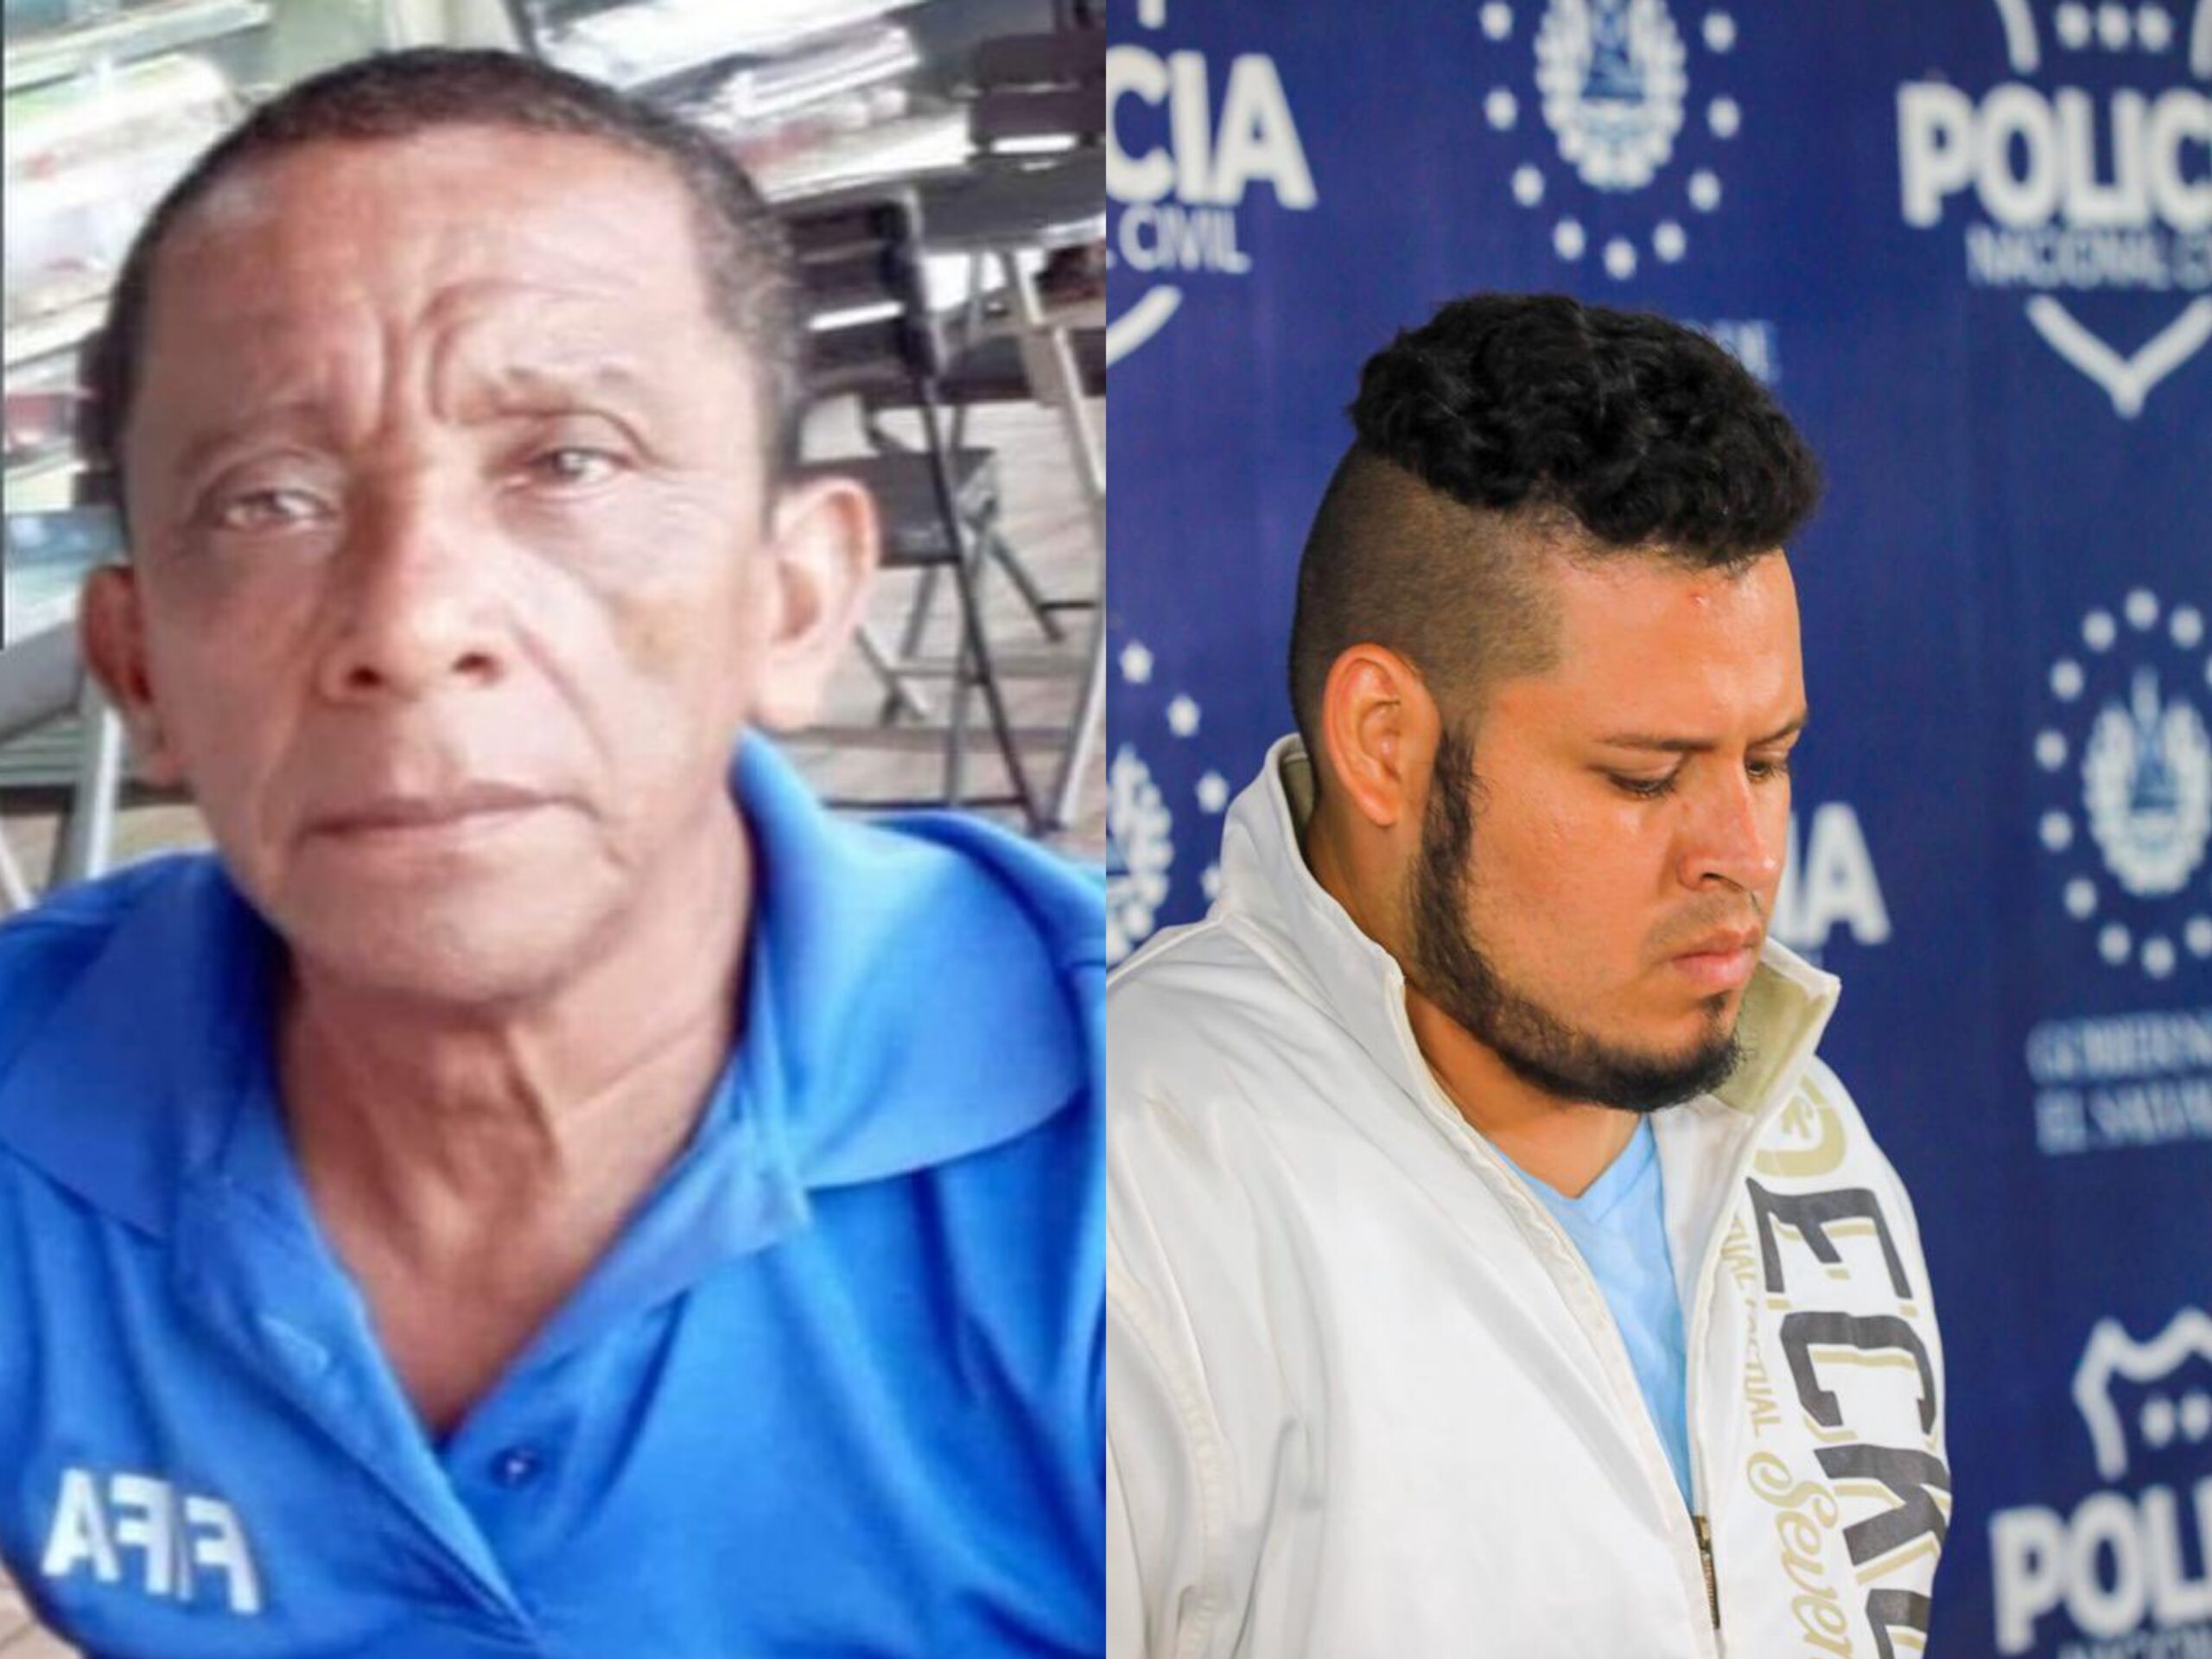 Gabinete de Seguridad presenta al responsable de la muerte del árbitro Arnoldo Amaya